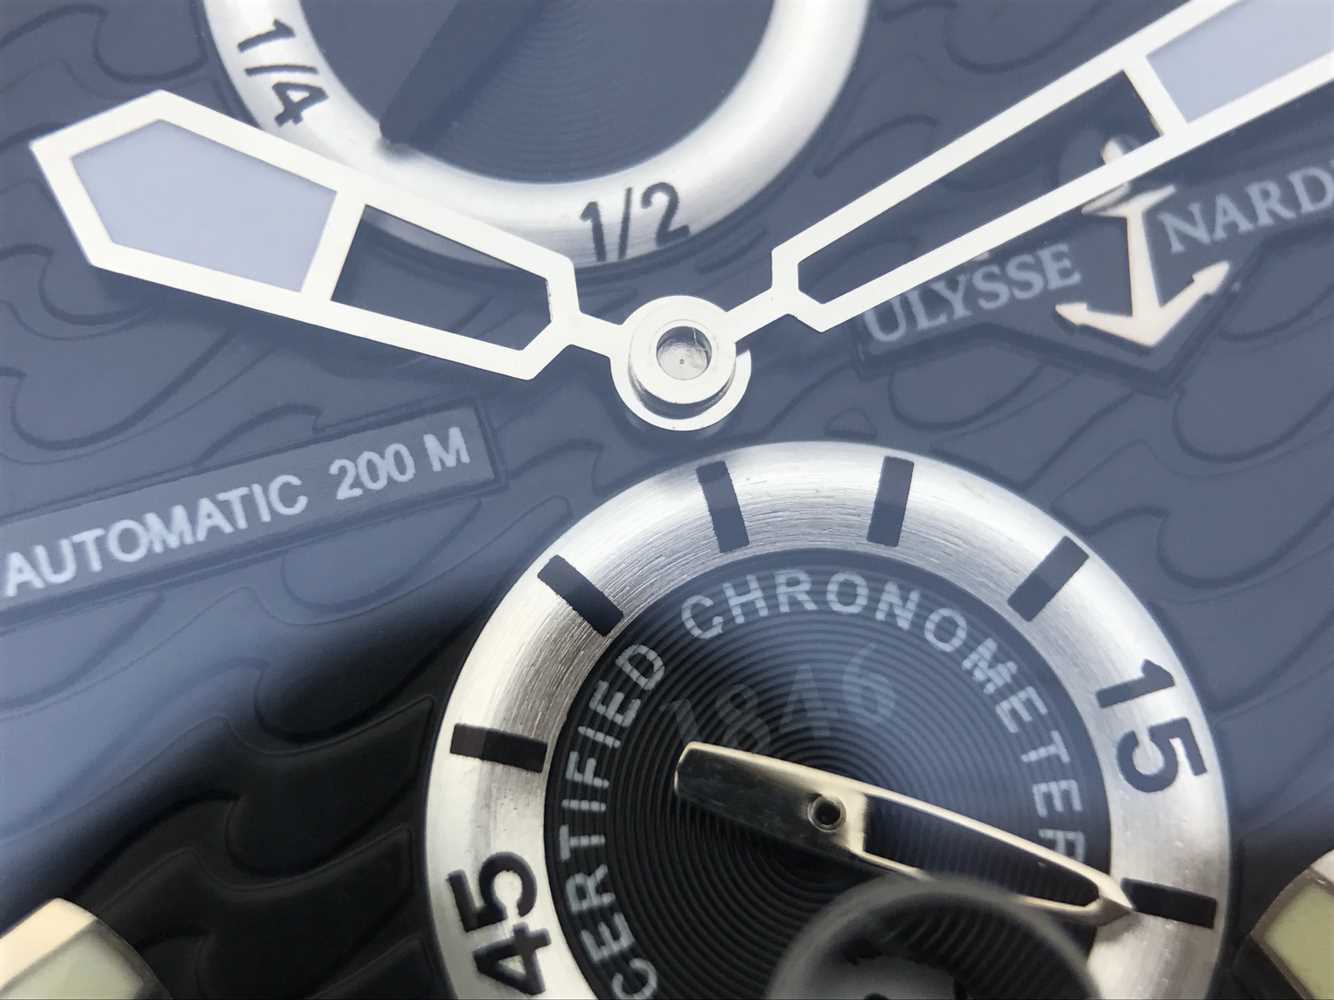 2023020415432993 - N厂雅典潜水系列263-90航海男士腕表手表￥3790